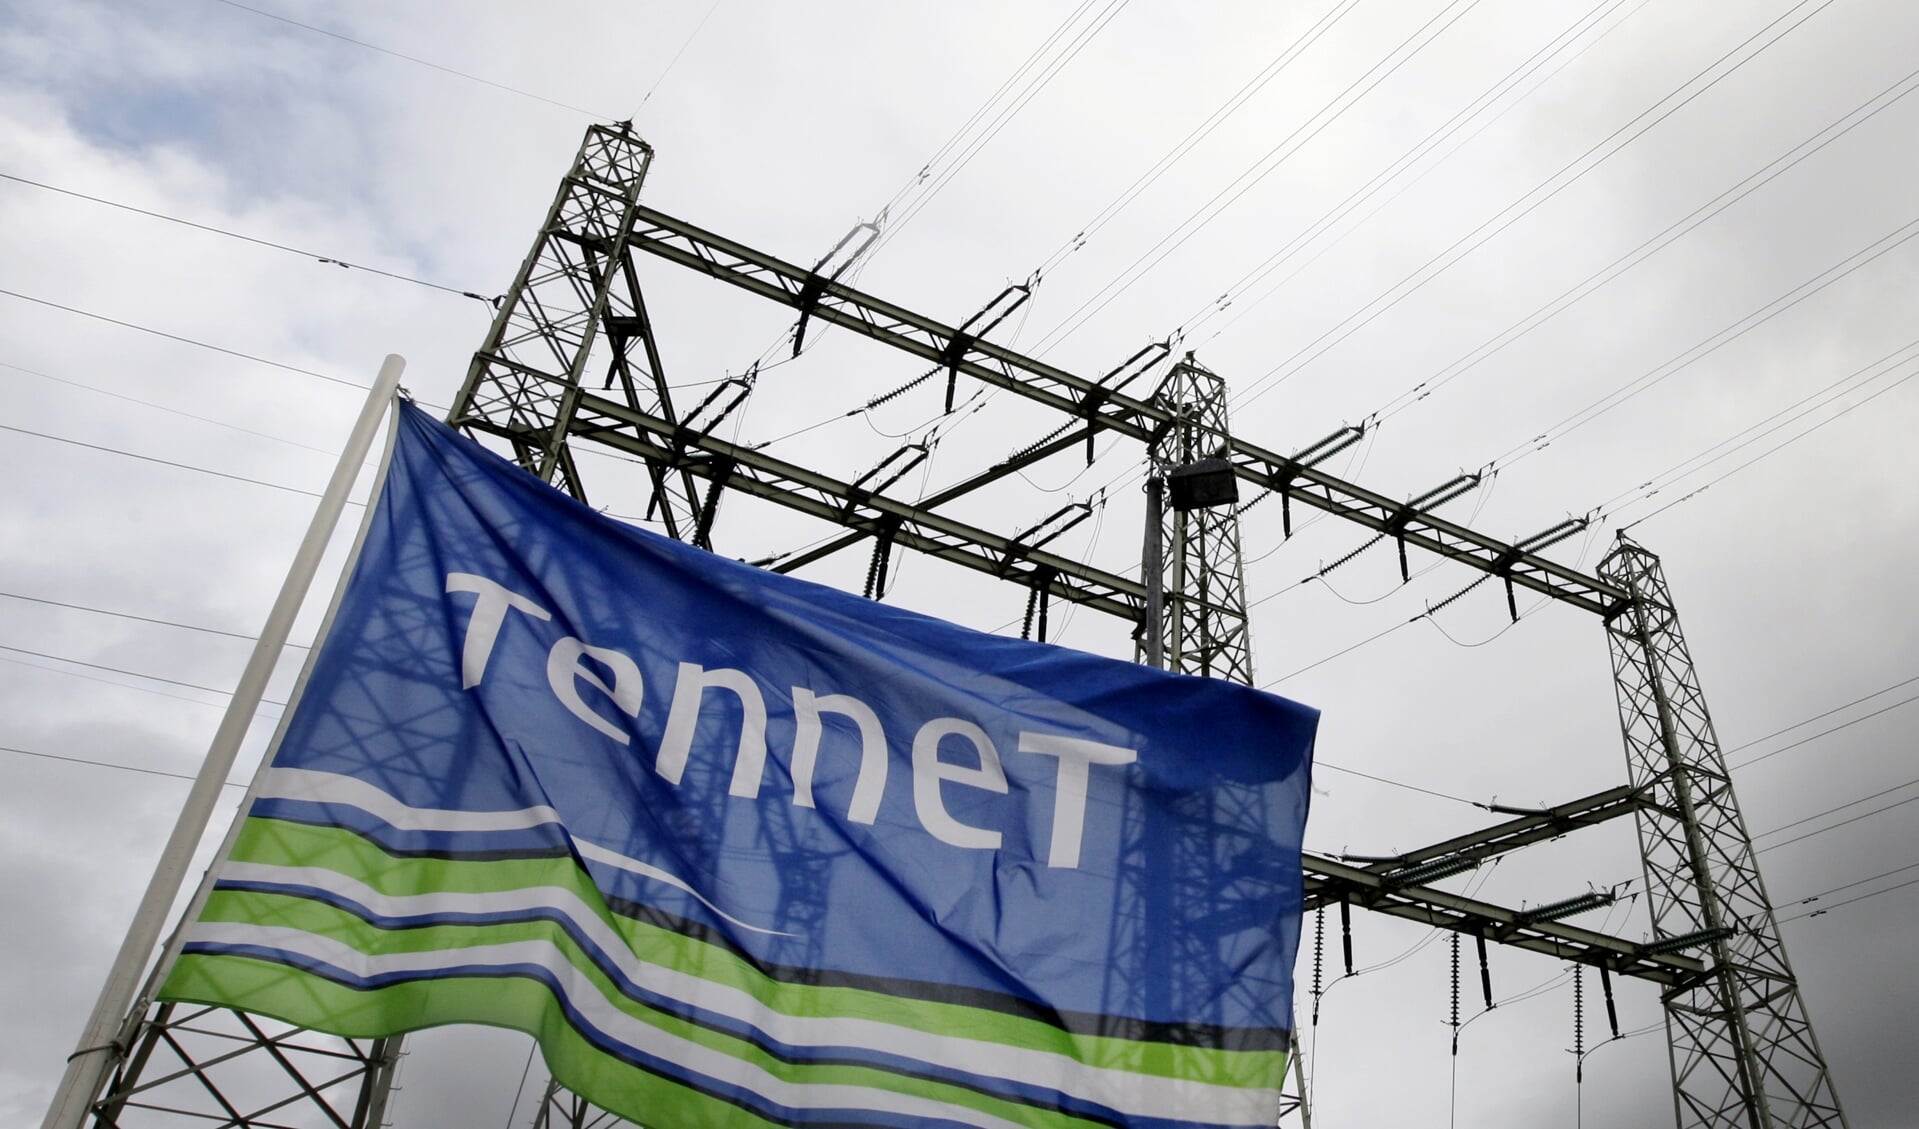 Regio Foodvalley roept netbeheerder TenneT op om haast te maken met de uitbreiding van het elektriciteitsnet. 